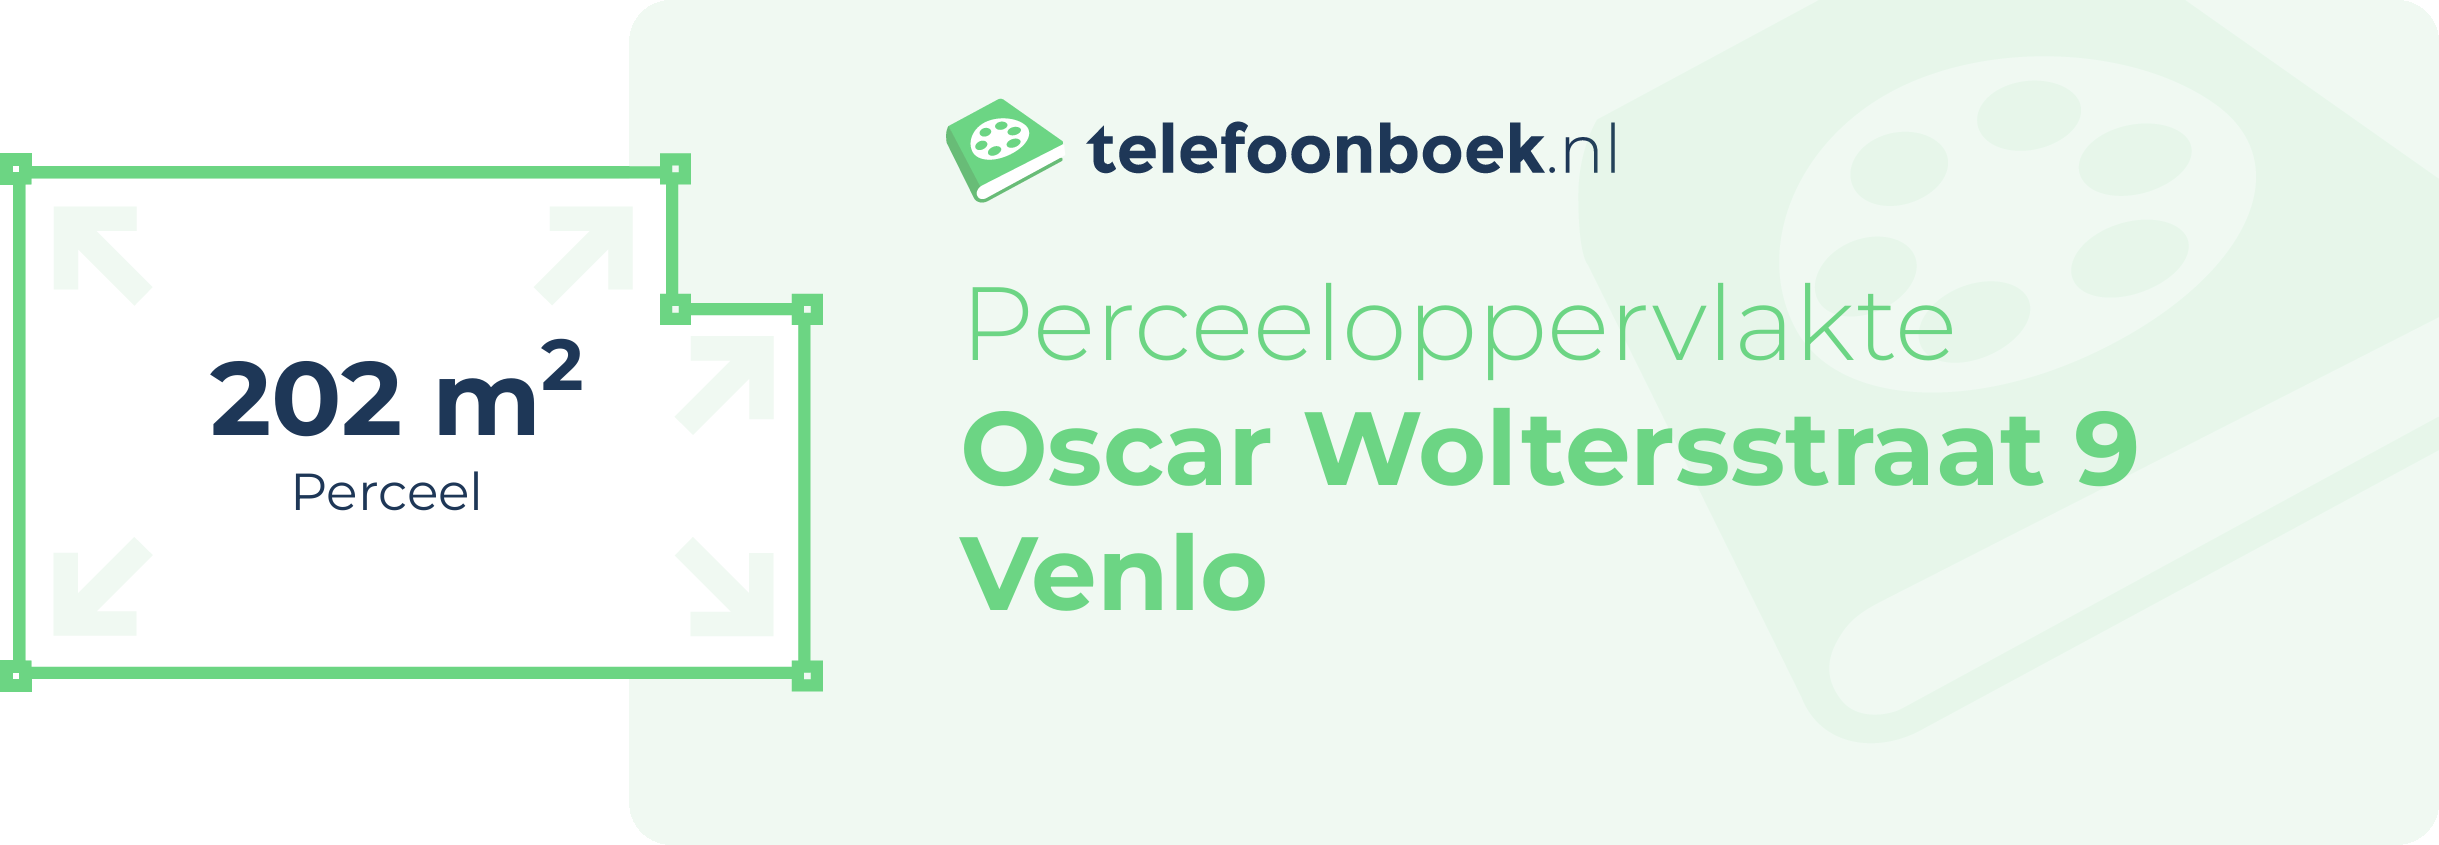 Perceeloppervlakte Oscar Woltersstraat 9 Venlo